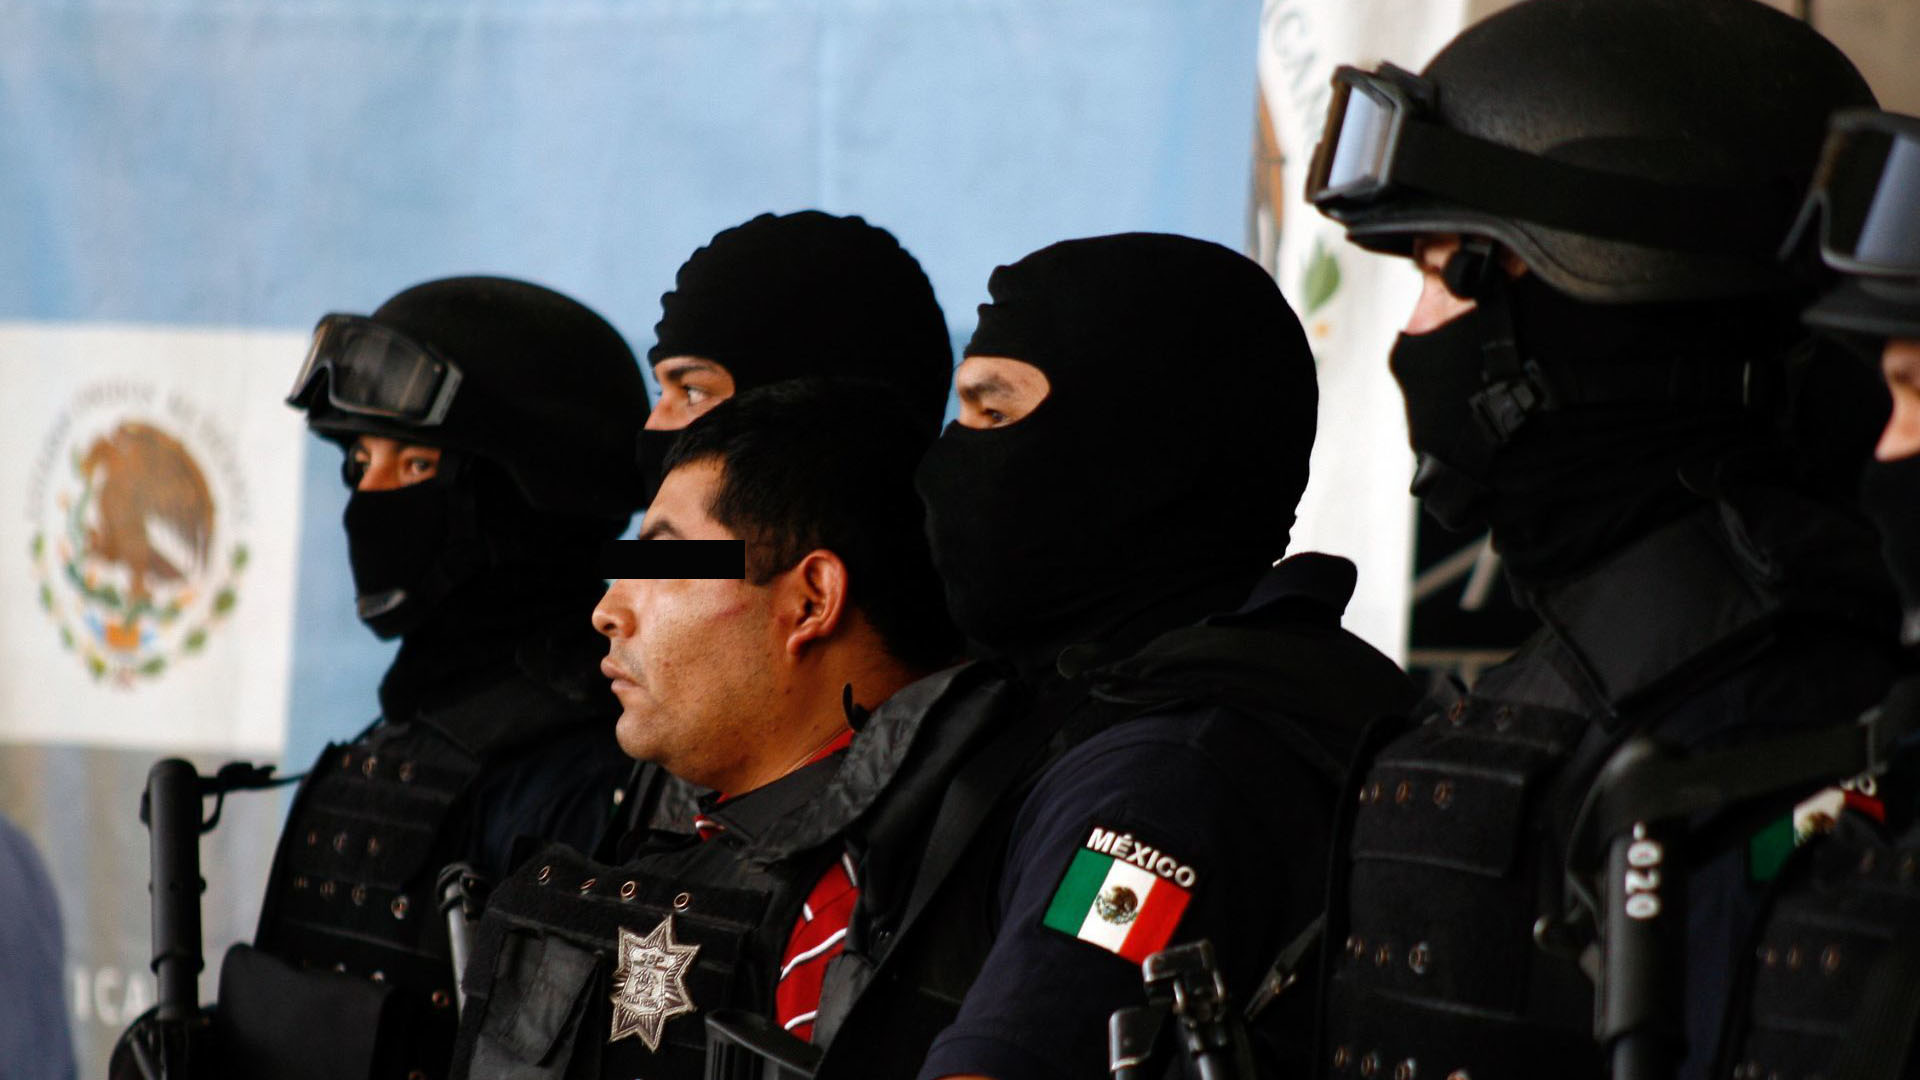 González Durán, de acuerdo con Milenio, es un desertor del Ejército mexicano que formó parte del Grupo Aeromóvil de Fuerzas Especiales (Gafes), la unidad de élite de la Secretaría de la Defensa Nacional (Sedena) (Foto: Cuartoscuro)